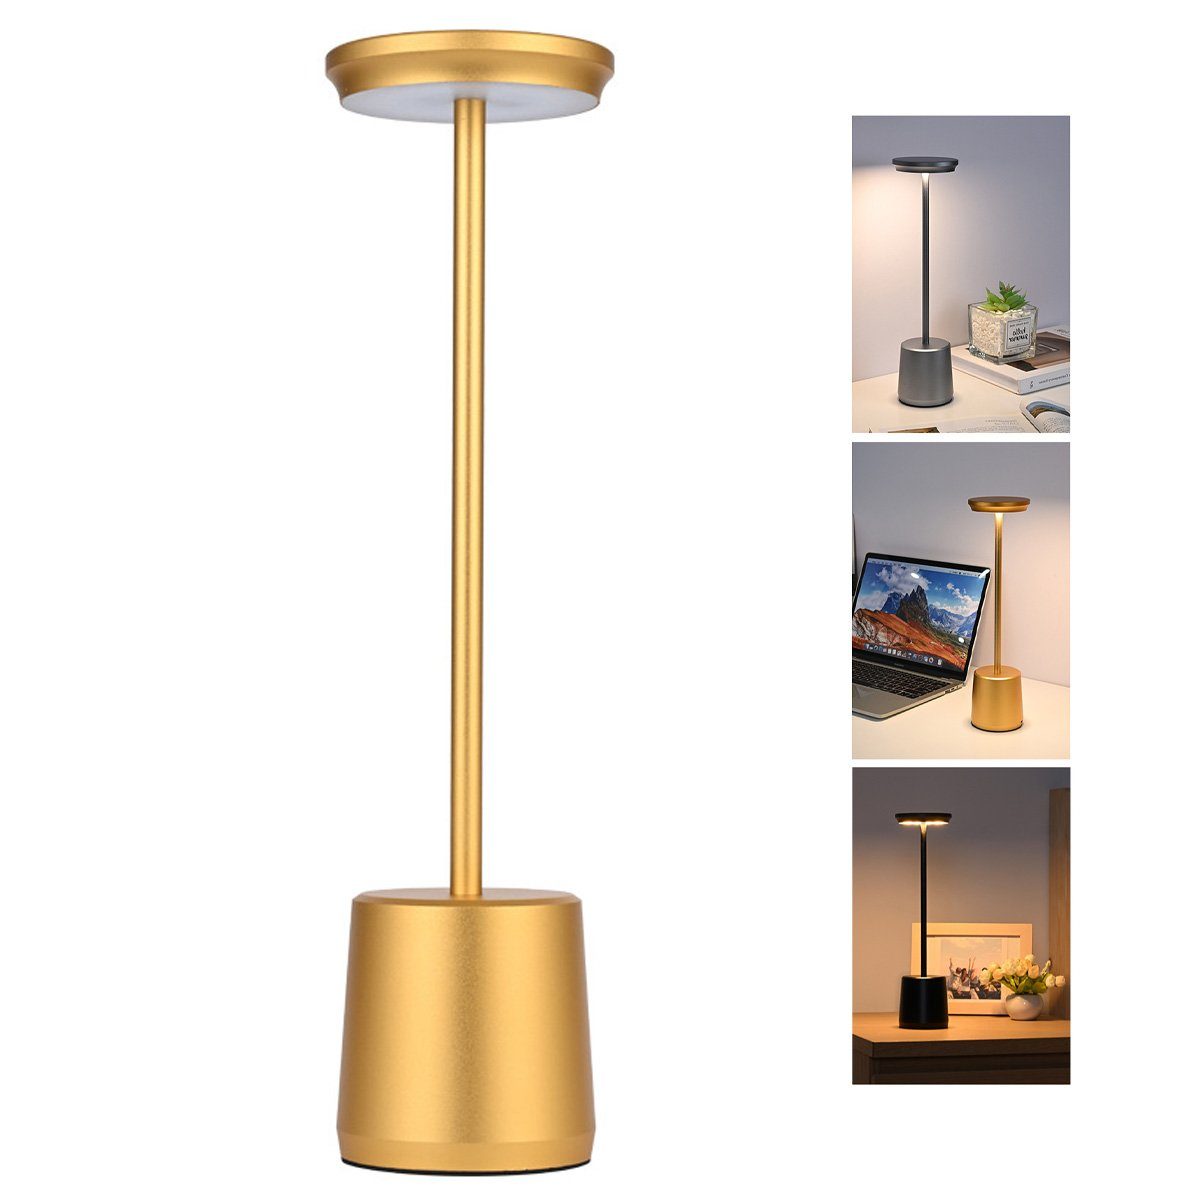 Welikera LED Schreibtischlampe 1.6W Schreibtischlampe,490*340mm Lampenkörper aus Aluminium,Dimmbar, 2400mAh Gold